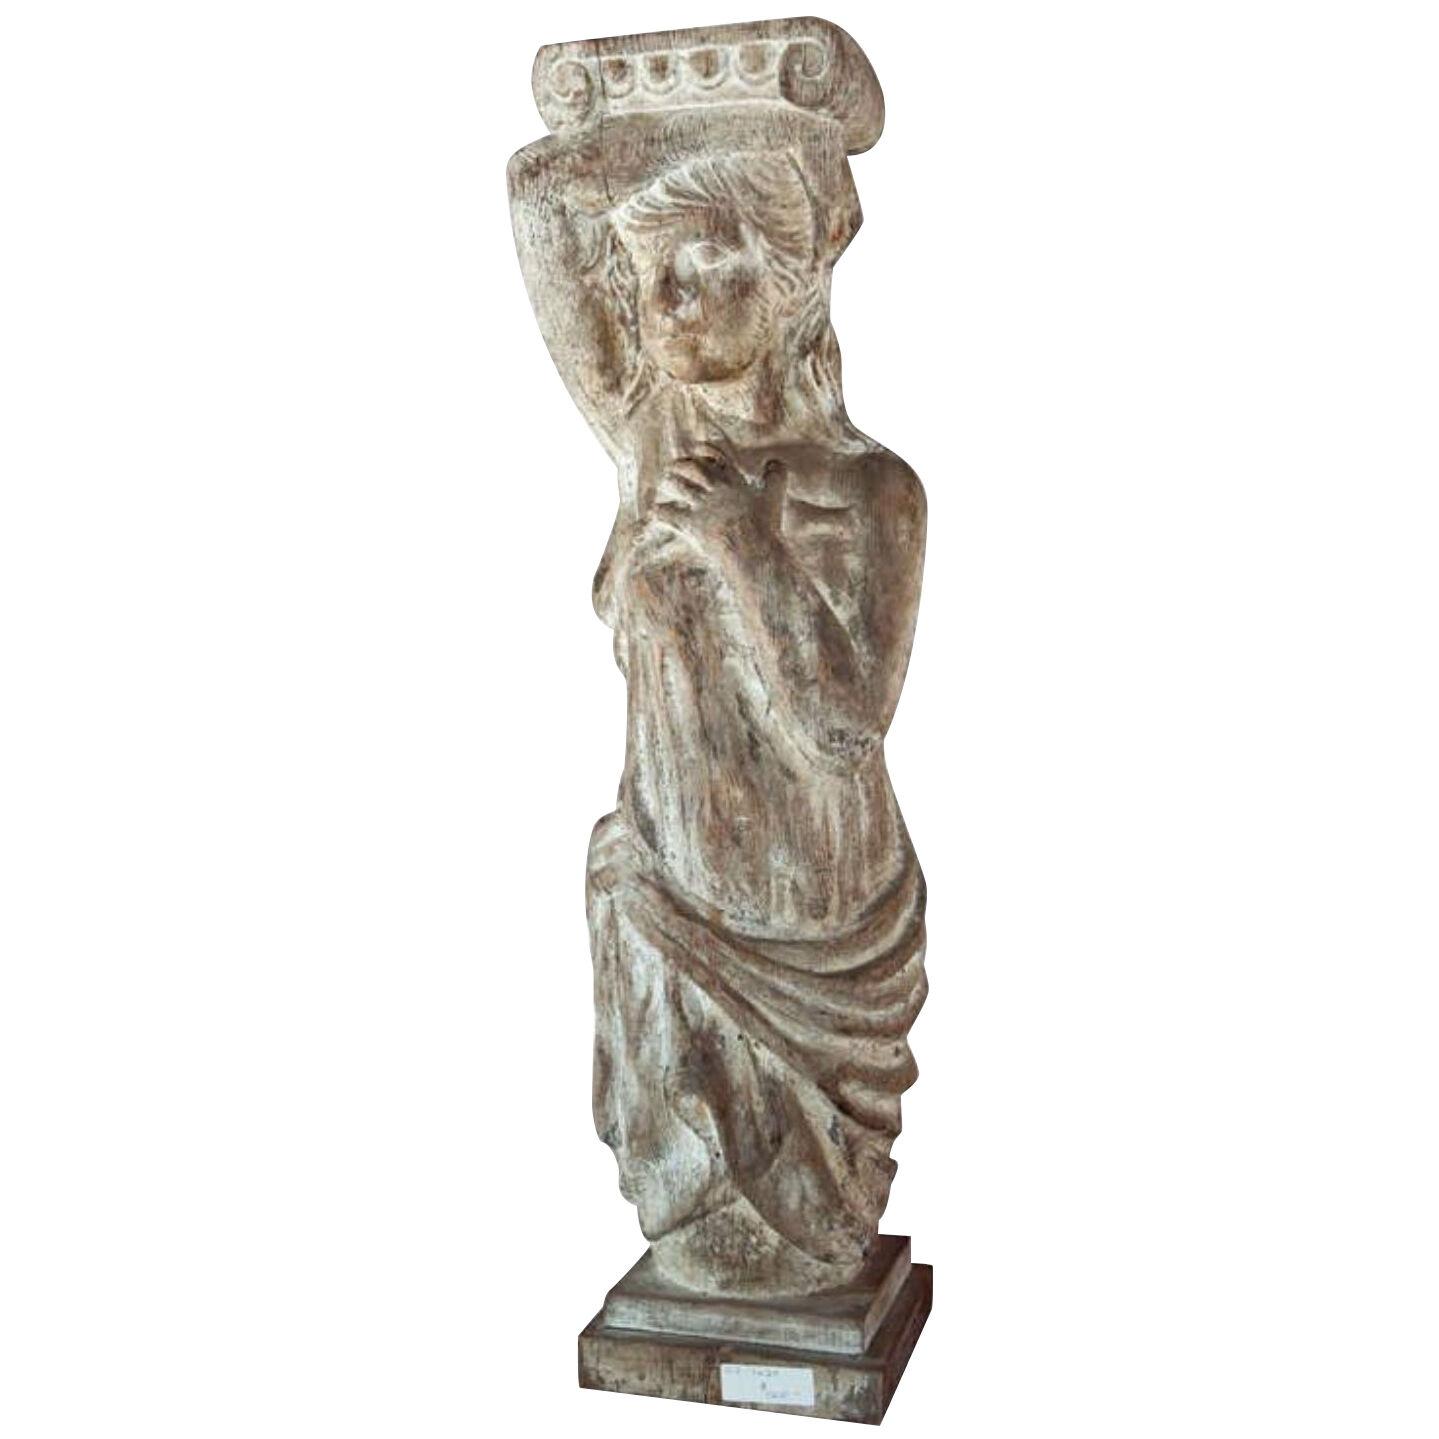 Carved Solid Wood Figure or Pedestal